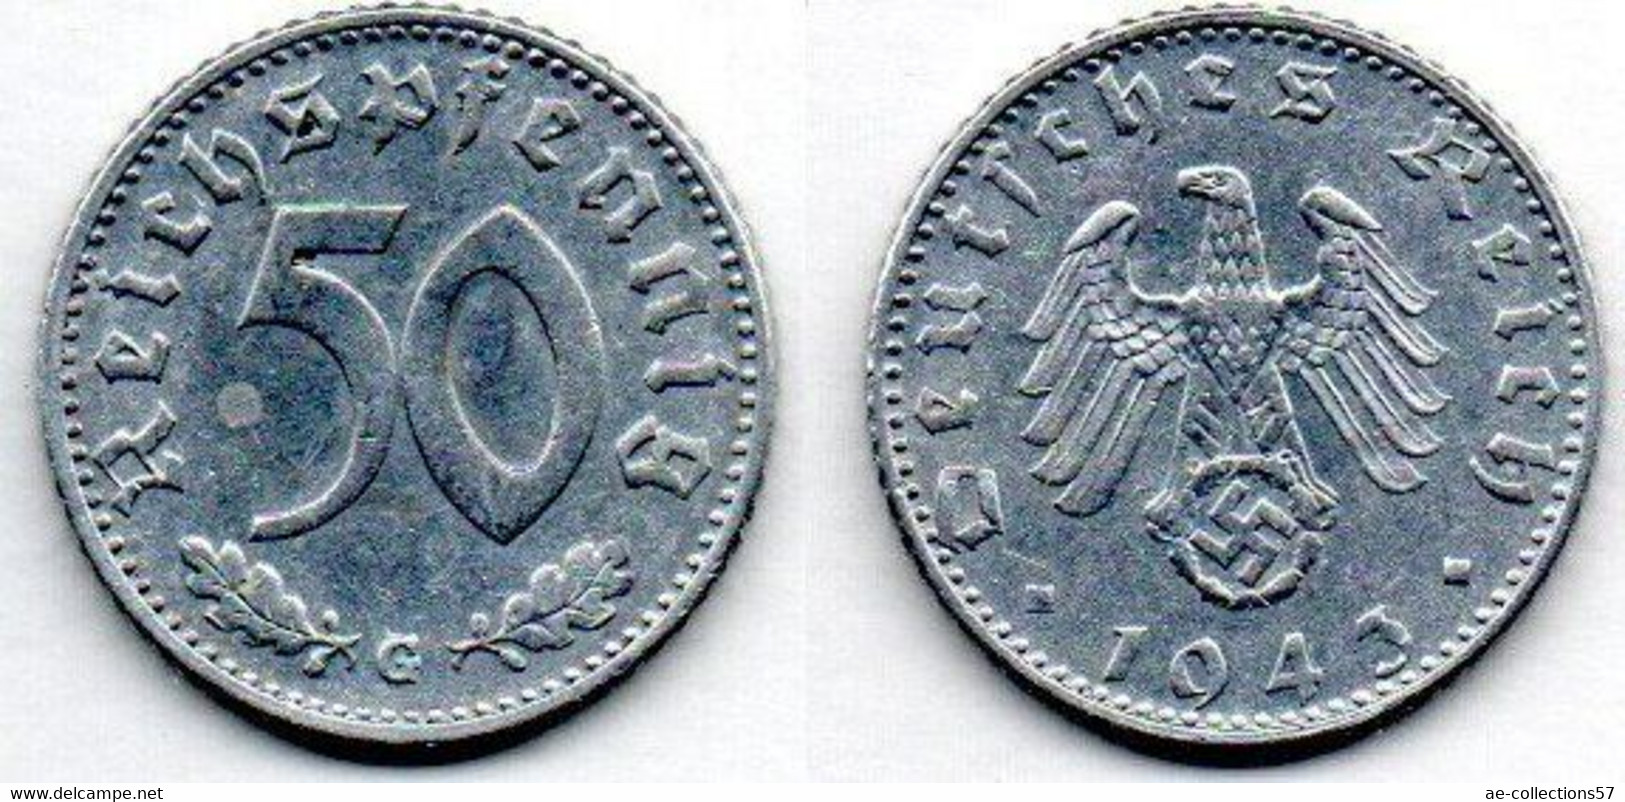 Allemagne - 50 Reichspfennig 1943 G TTB - 50 Reichspfennig